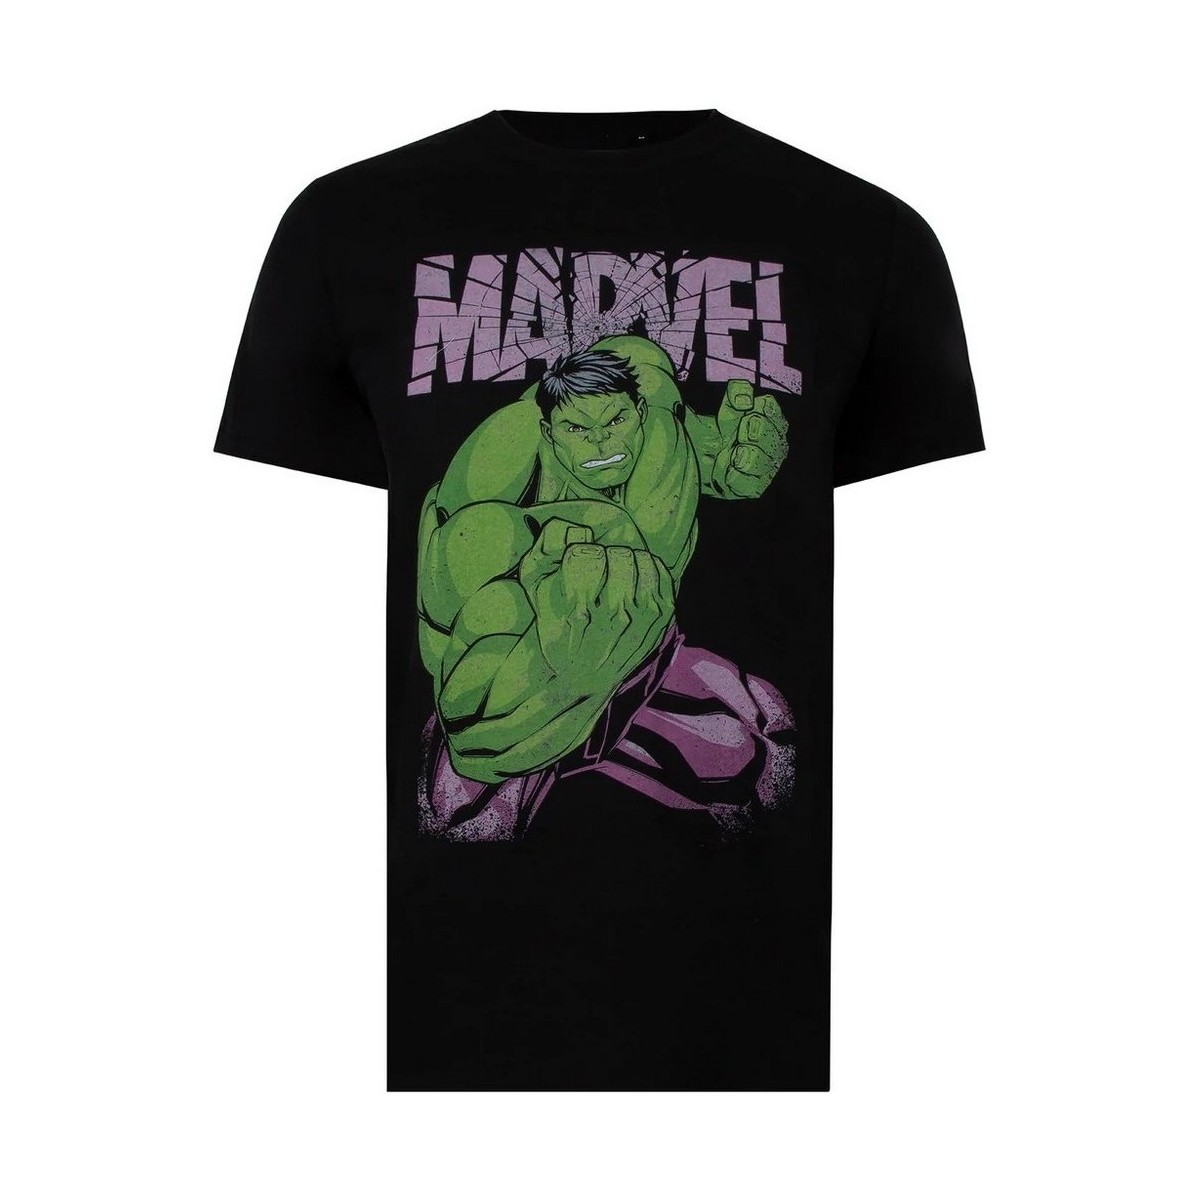 Vêtements Homme T-shirts manches longues Hulk TV1381 Noir